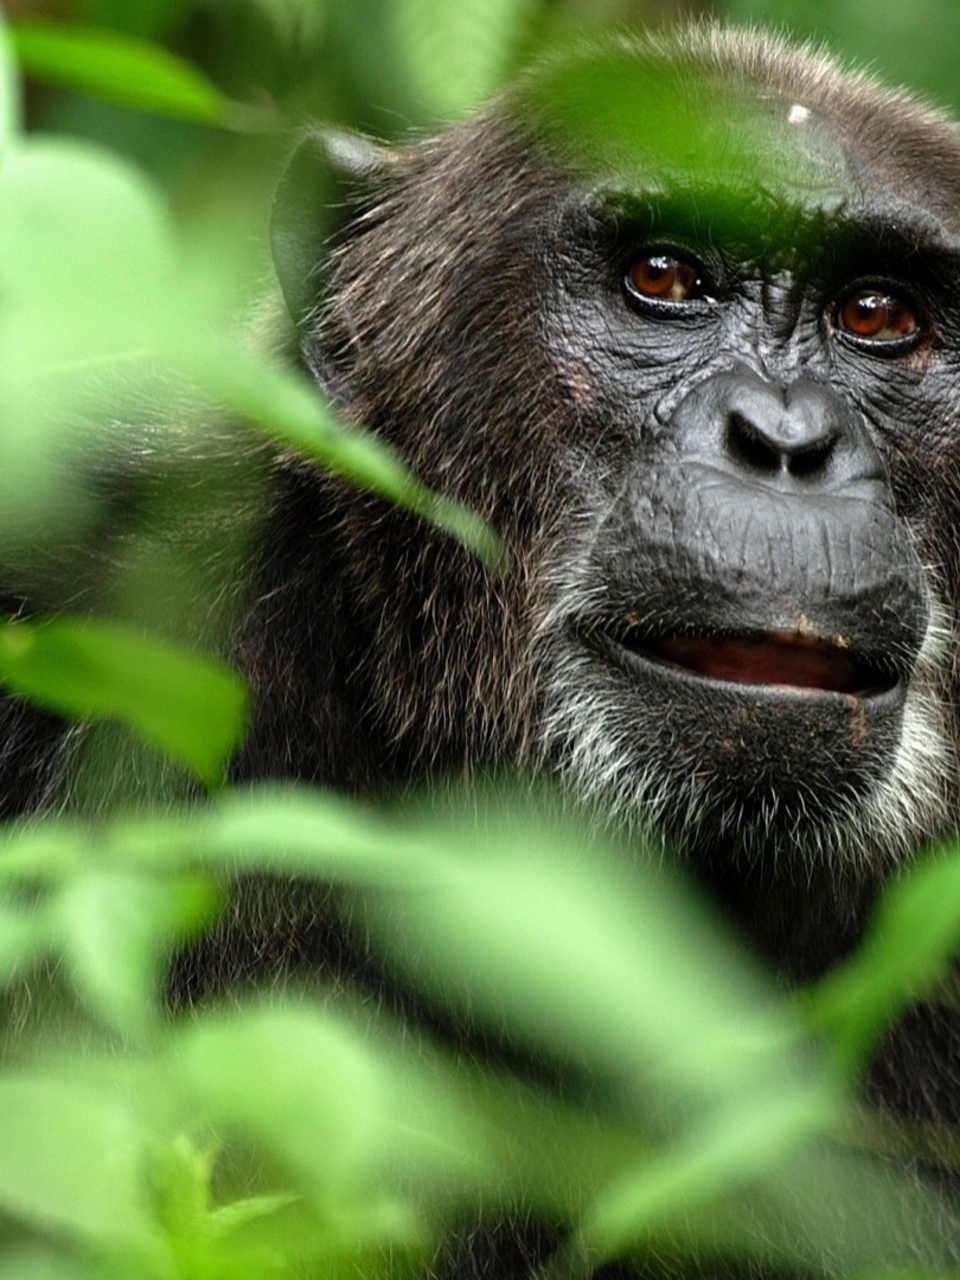 Image: Monkey, chimpanzee, jungle, branches, leaves, muzzle, eyes